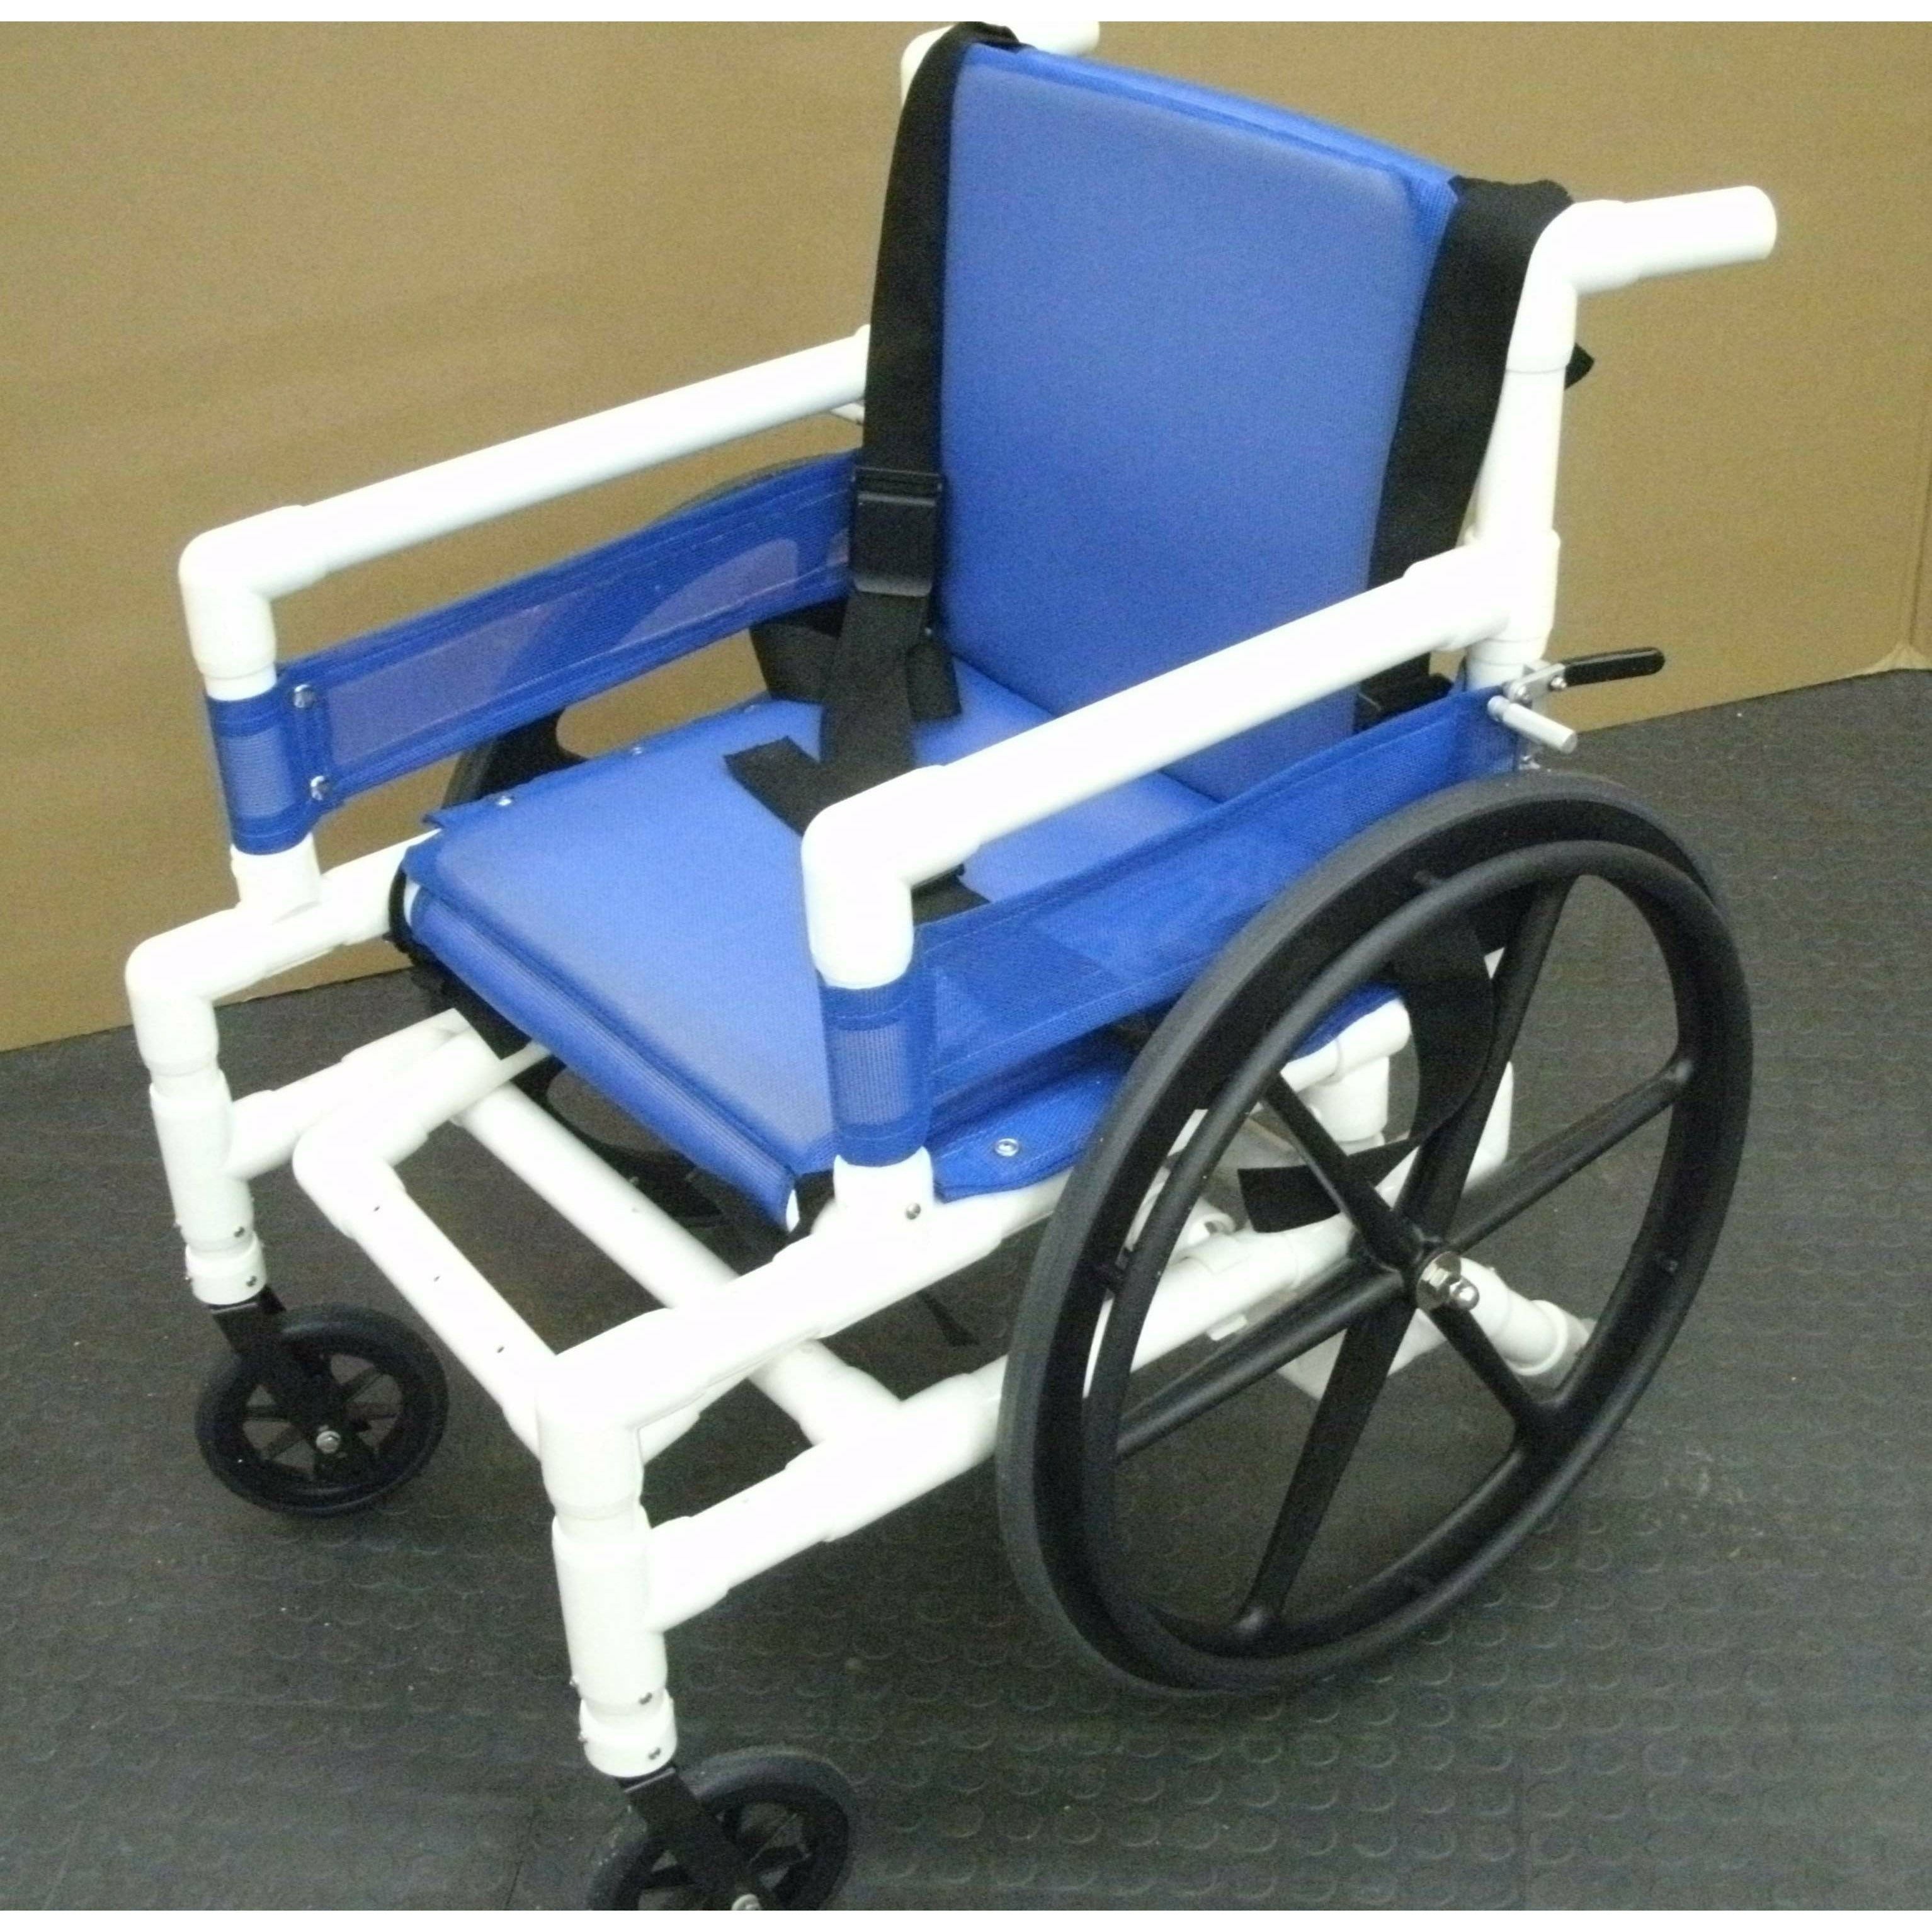 Aquatrek2 AQ-250-WC Aquatic Pool Wheelchair